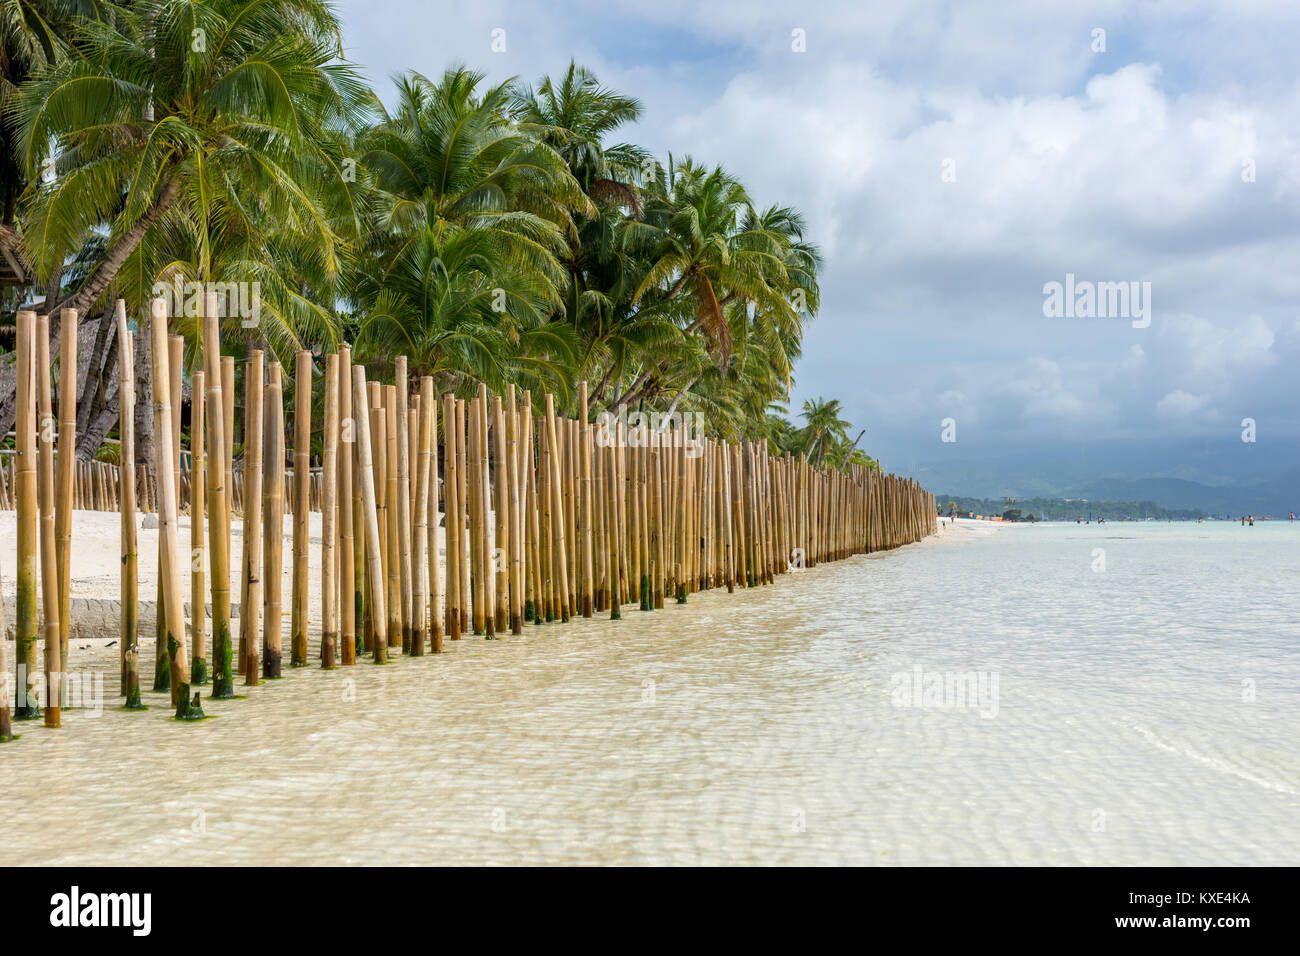 Blick nach unten eine Zaun-Barriere von Bambusstangen in einem tropischen Insel weißen Sandstrand mit Palmen gesäumten Ufer und hügeligen Landzunge in die Distanc gemacht Stockfoto